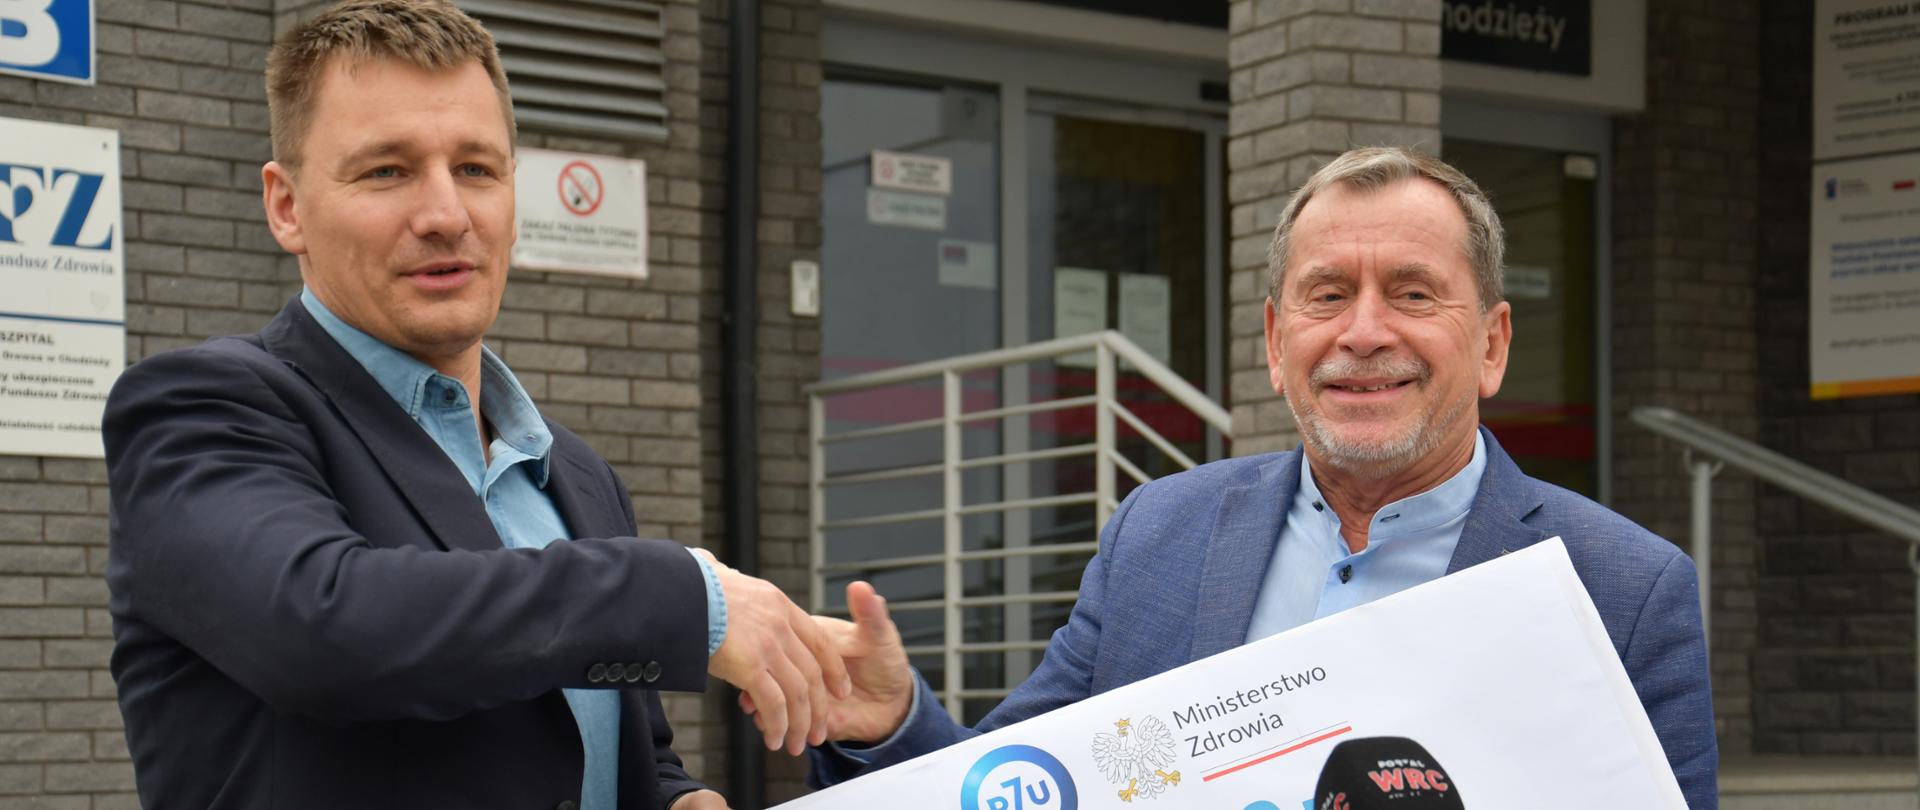 2 osoby w garniturach stojące przed wejściem do budynku z symbolicznym czekiem na 2 000 000 zł